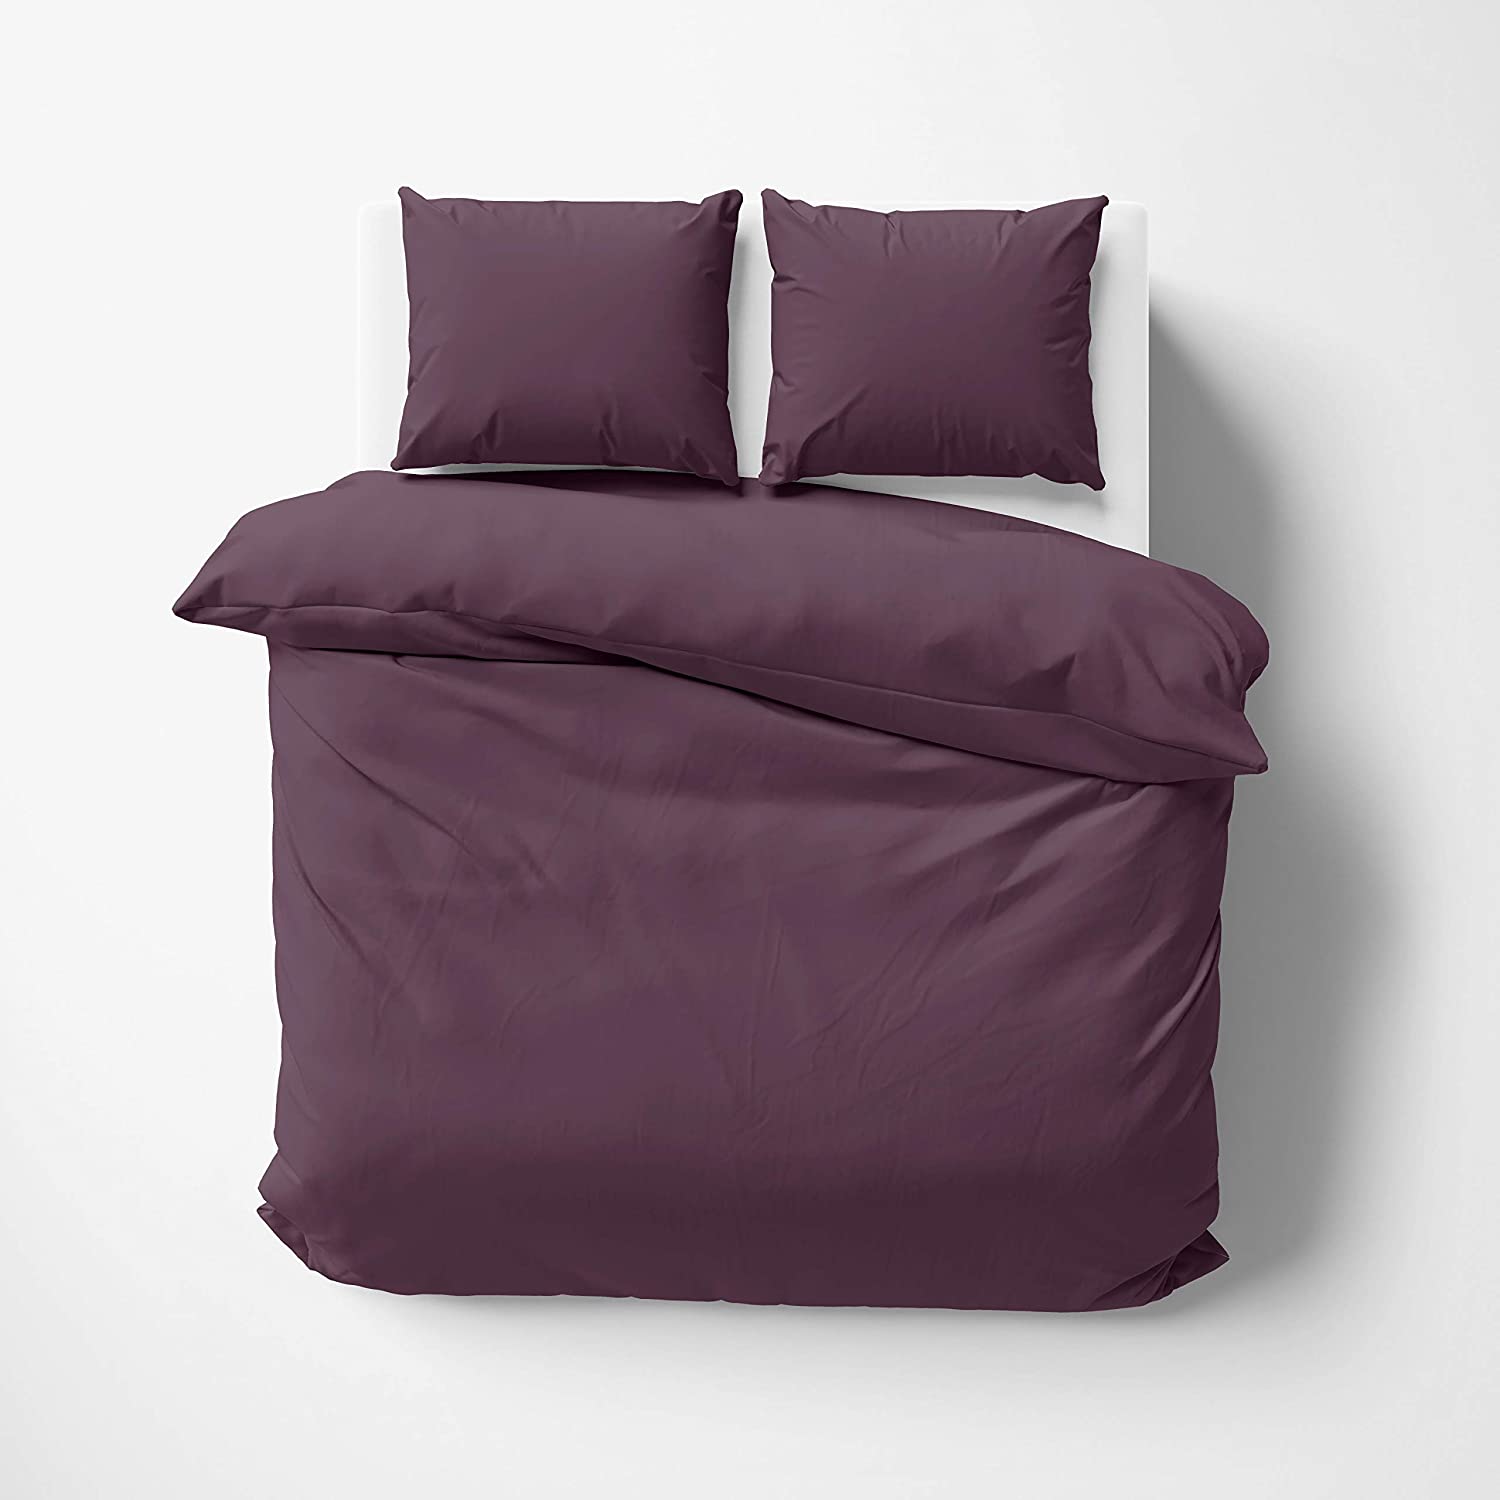 Daisy Single 100% Cotton Plain Duvet Cover Set 160x220 cm Purple